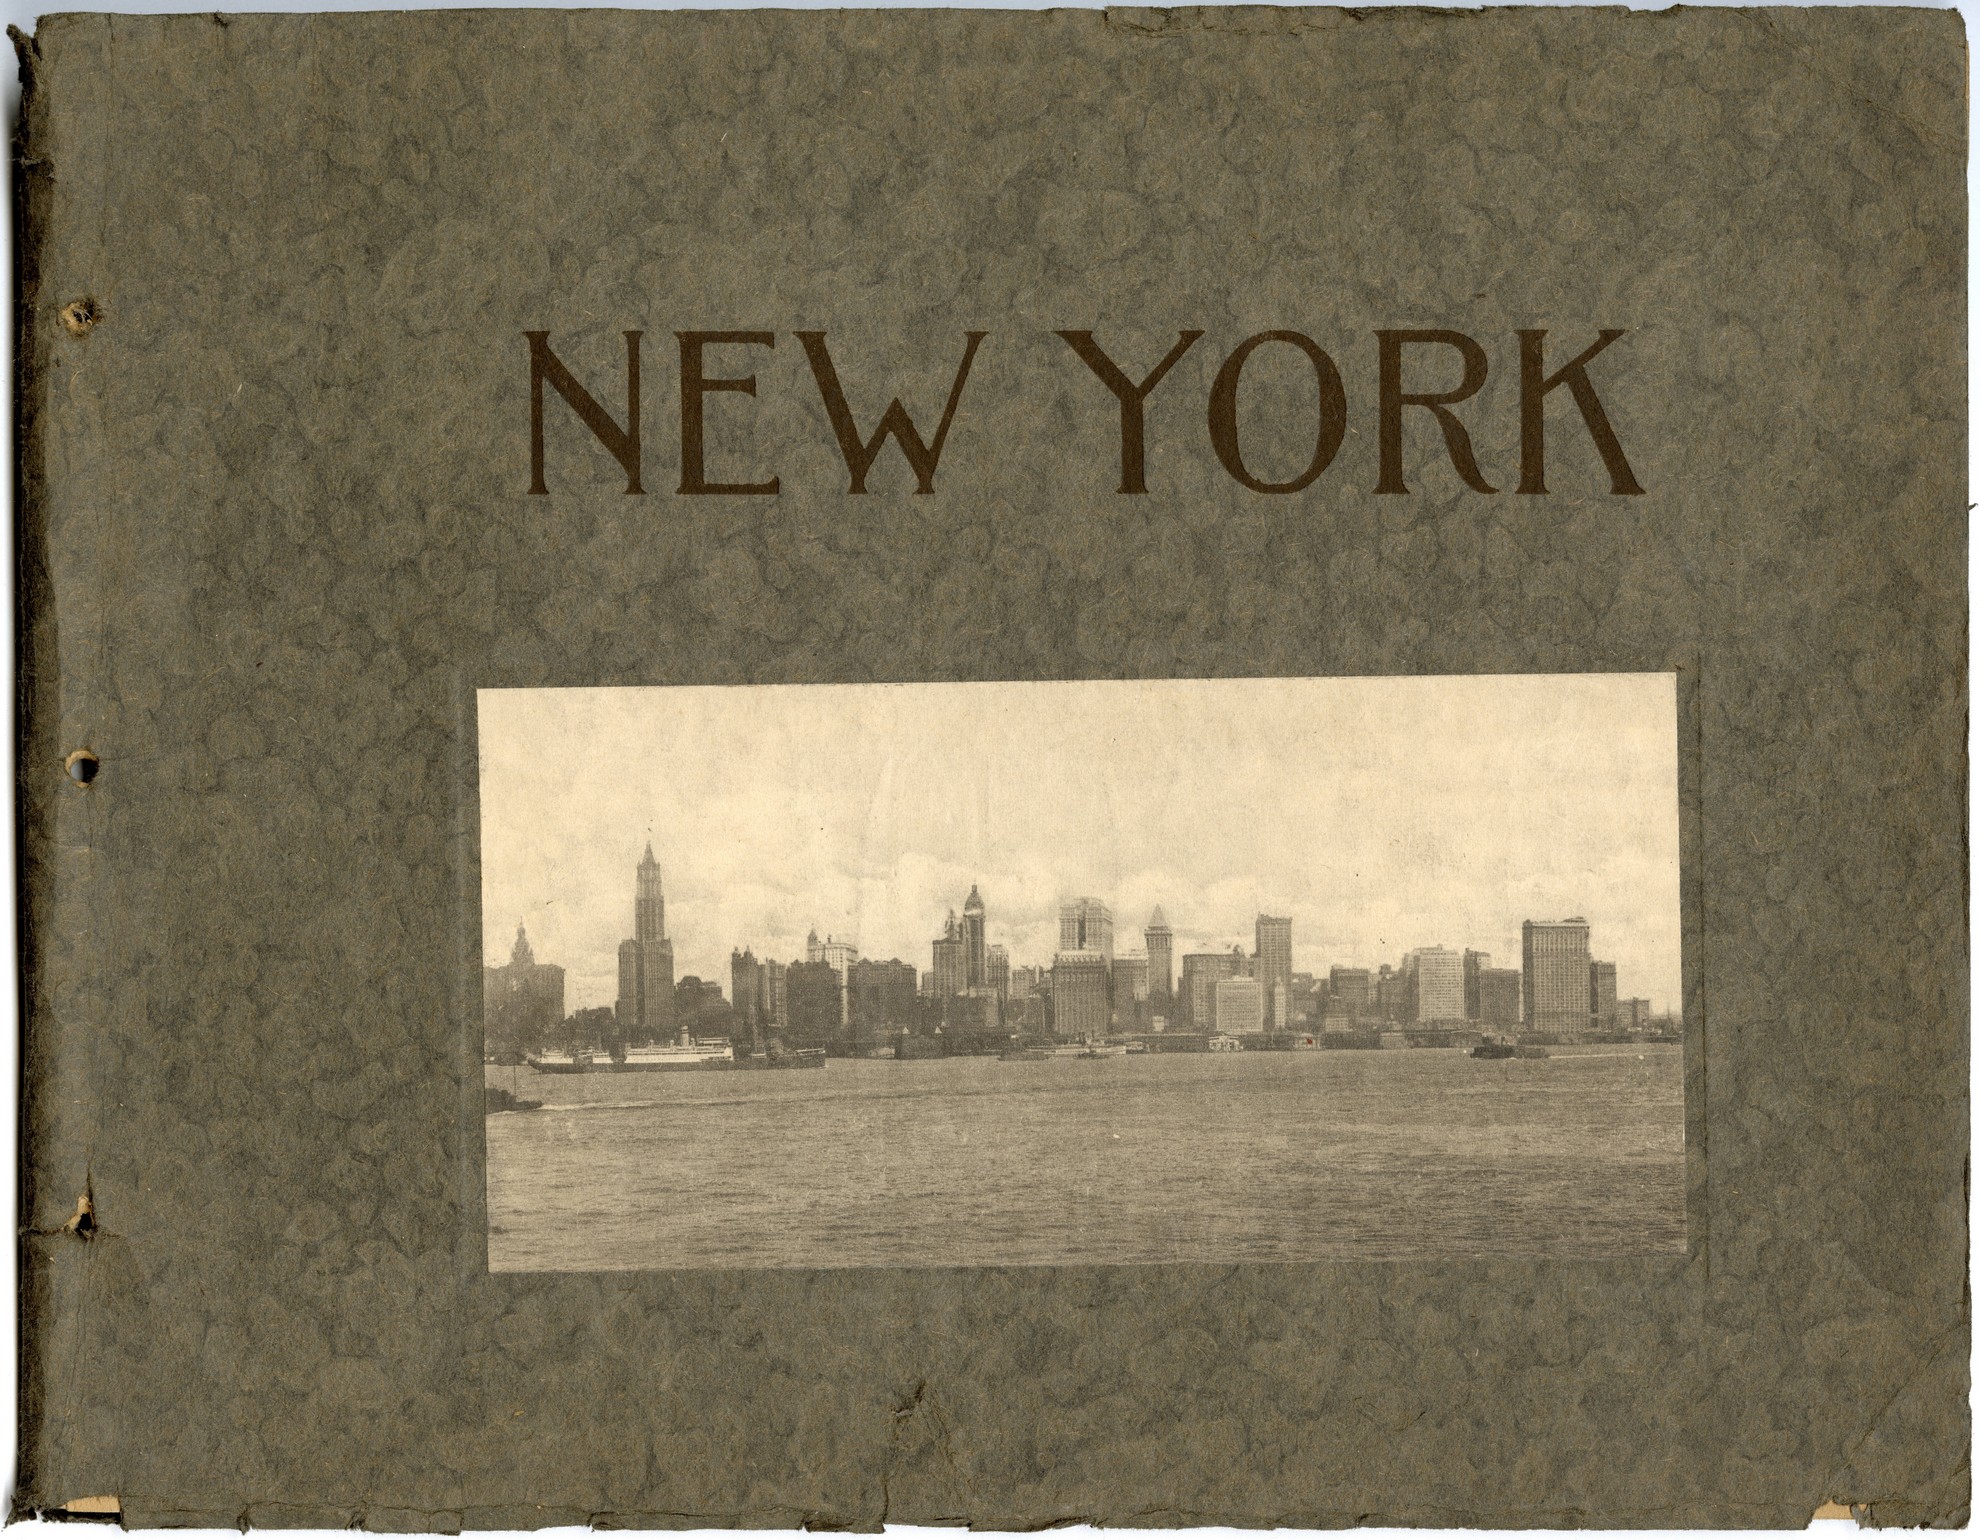 Souvenir book of New York - City Collection